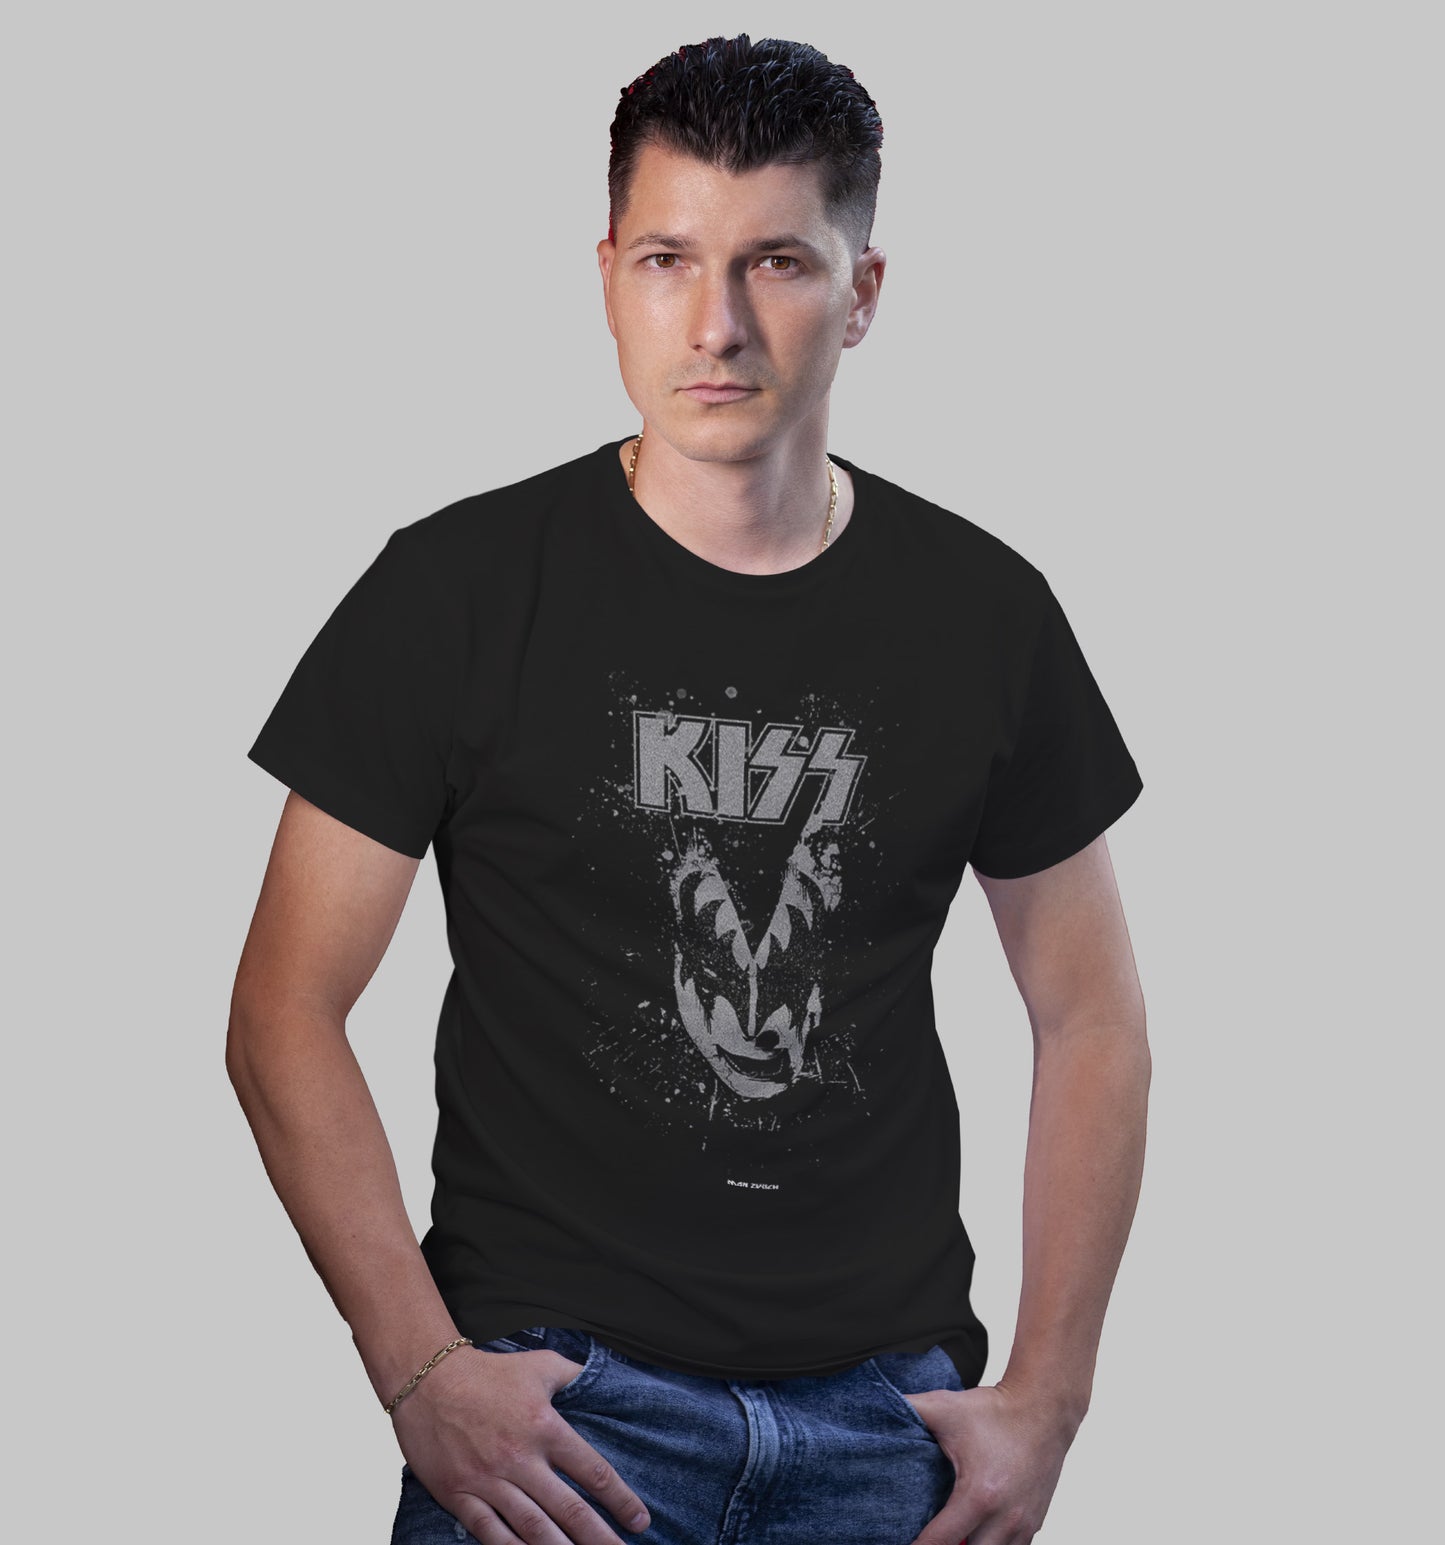 KISS BLK T-shirt in Dark - Mon Zurich Originals